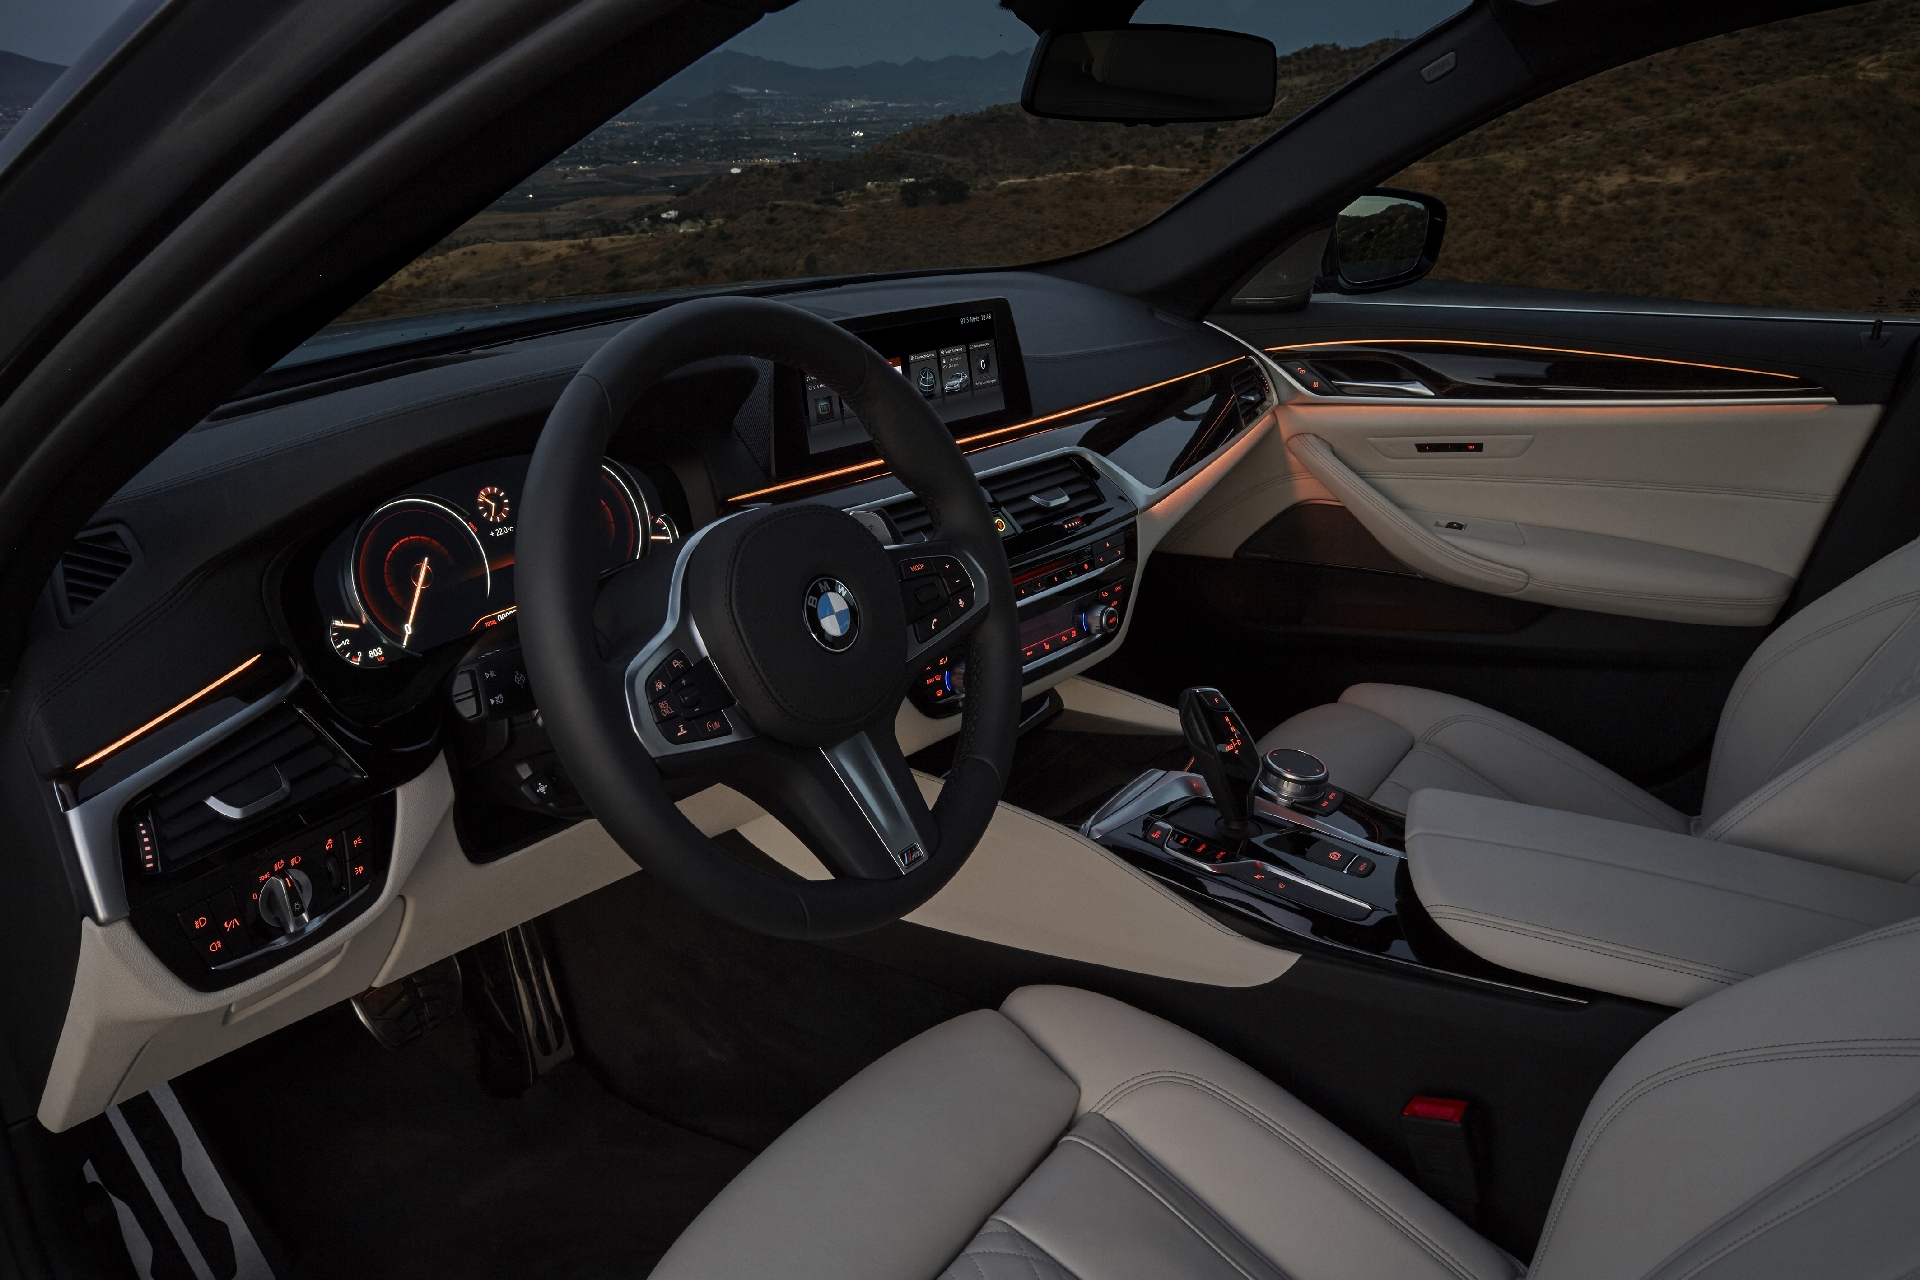 BMW 5 Series 2017 интерьер